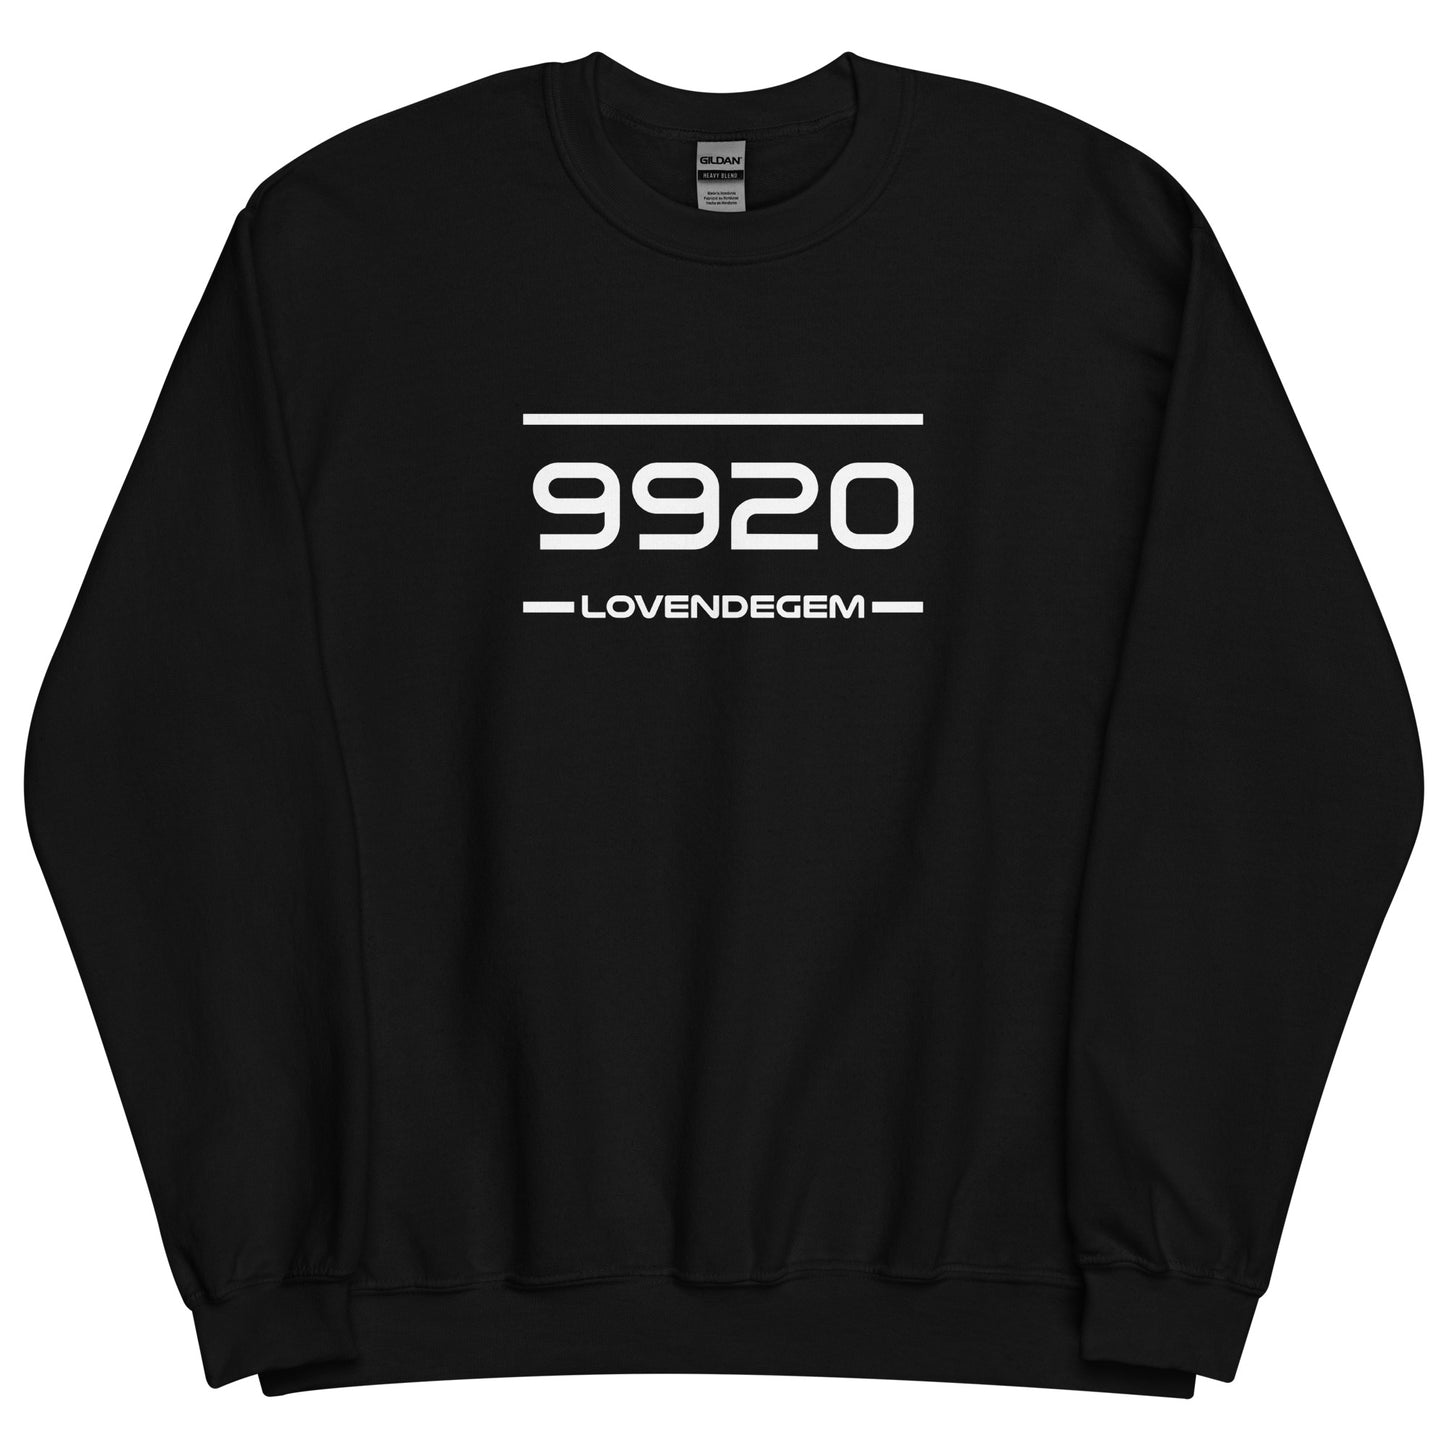 Sweater - 9920 - Lovendegem (M/V)